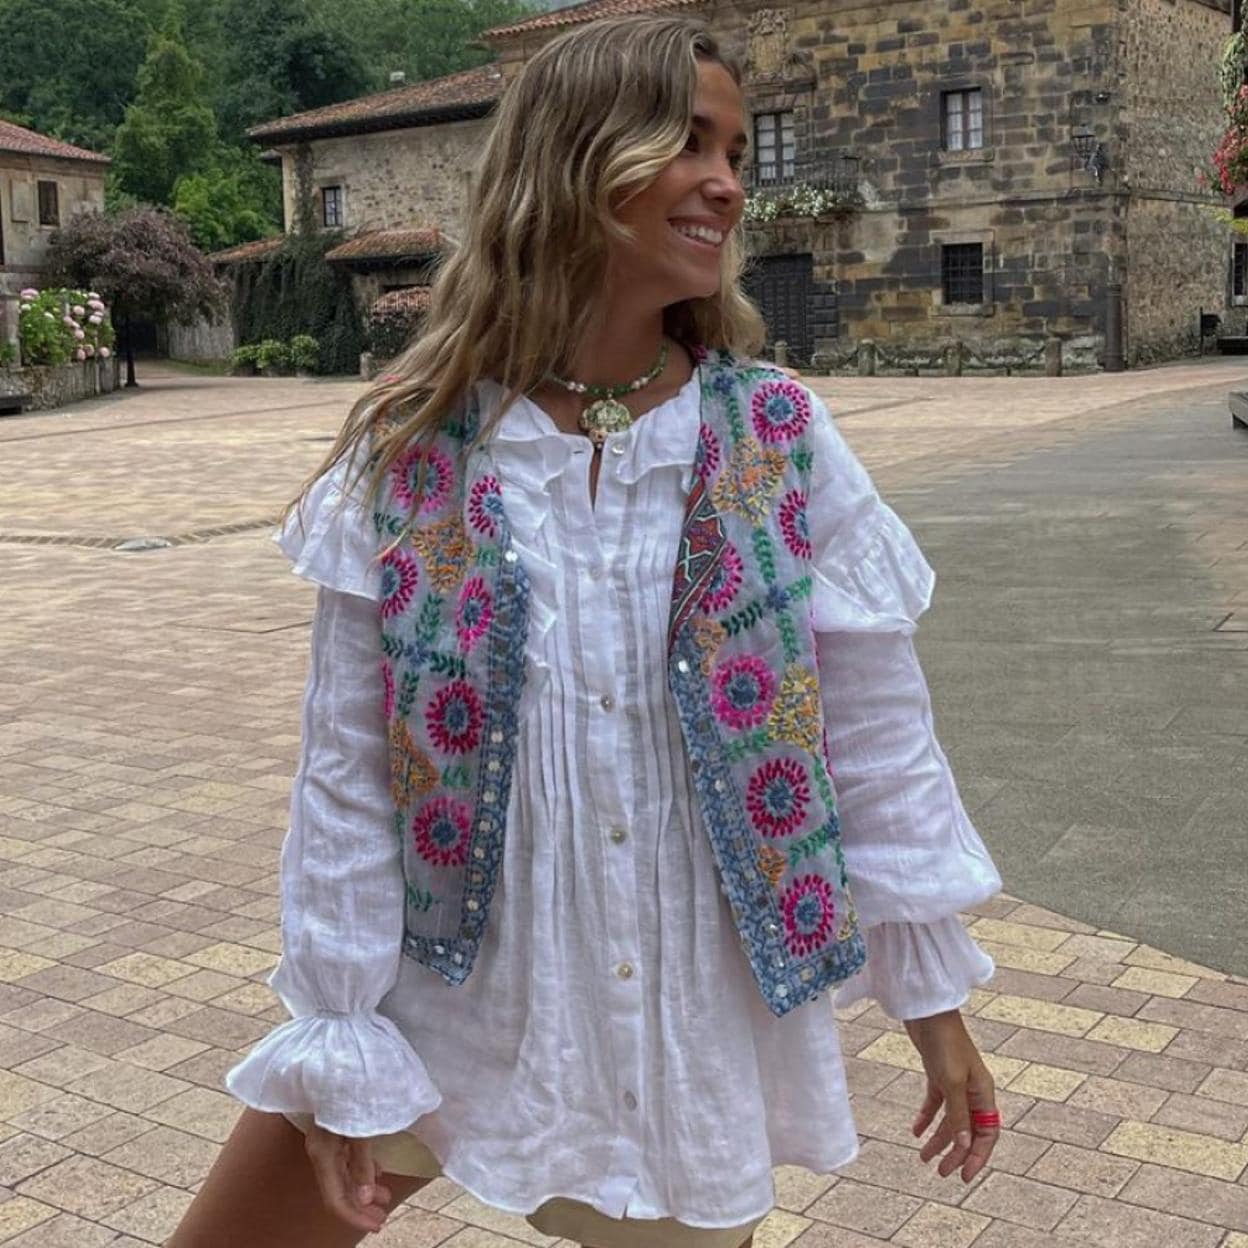 Agotada y sin lista de espera: dónde y cómo la blusa blanca romántica de las rebajas de Zara que en Instagram | Hoy